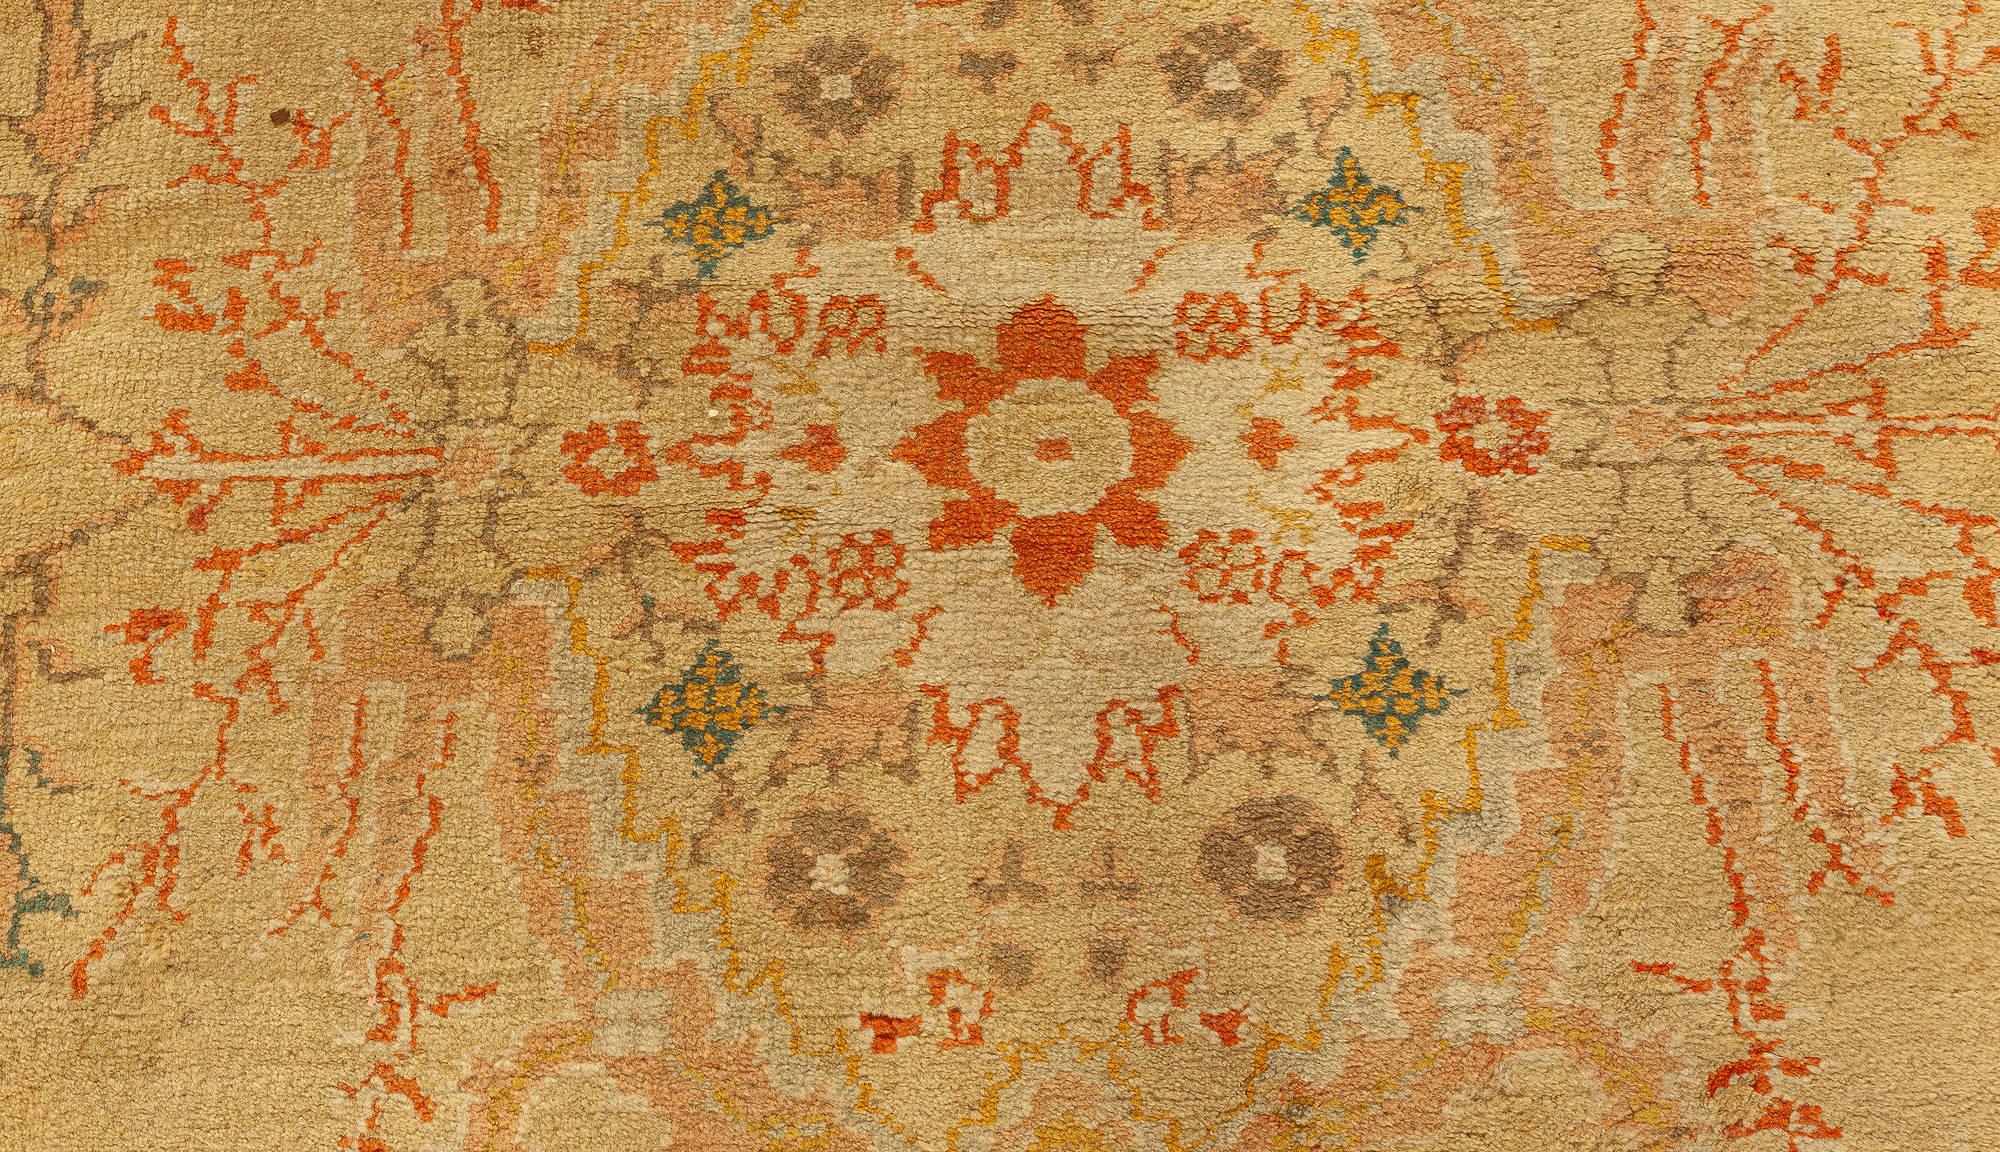 Antique Turkish Oushak beige botanic rug
Size: 11'5